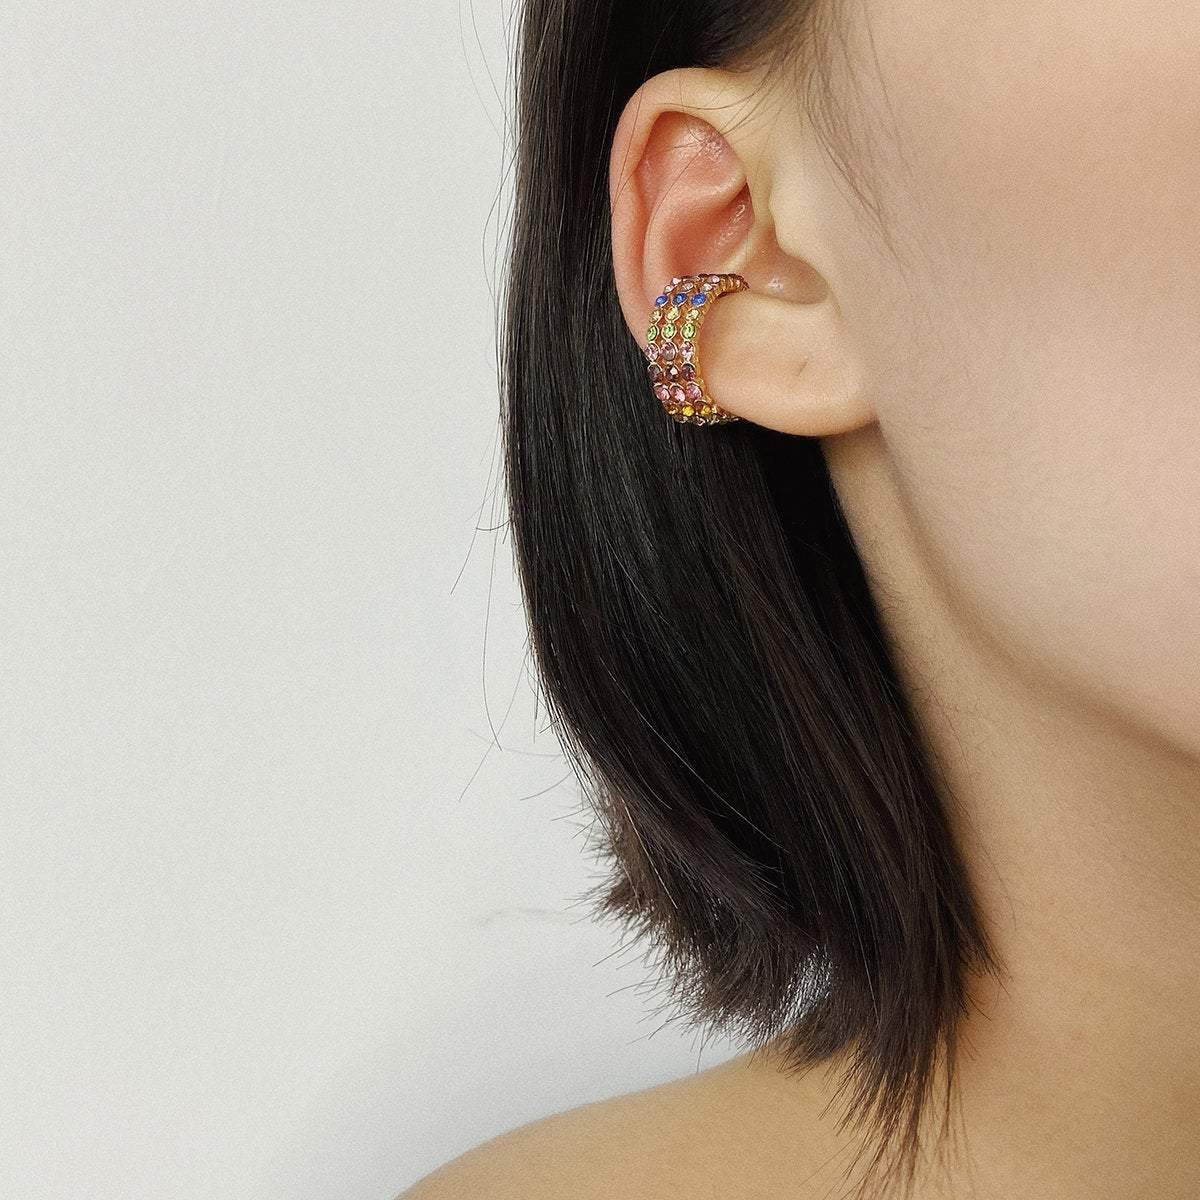 Crystal Inlaid Small Hoop Huggie Earrings Ear Cuffs - Minimalist Non Pierced Ear Cuff Earrings - ArtGalleryZen